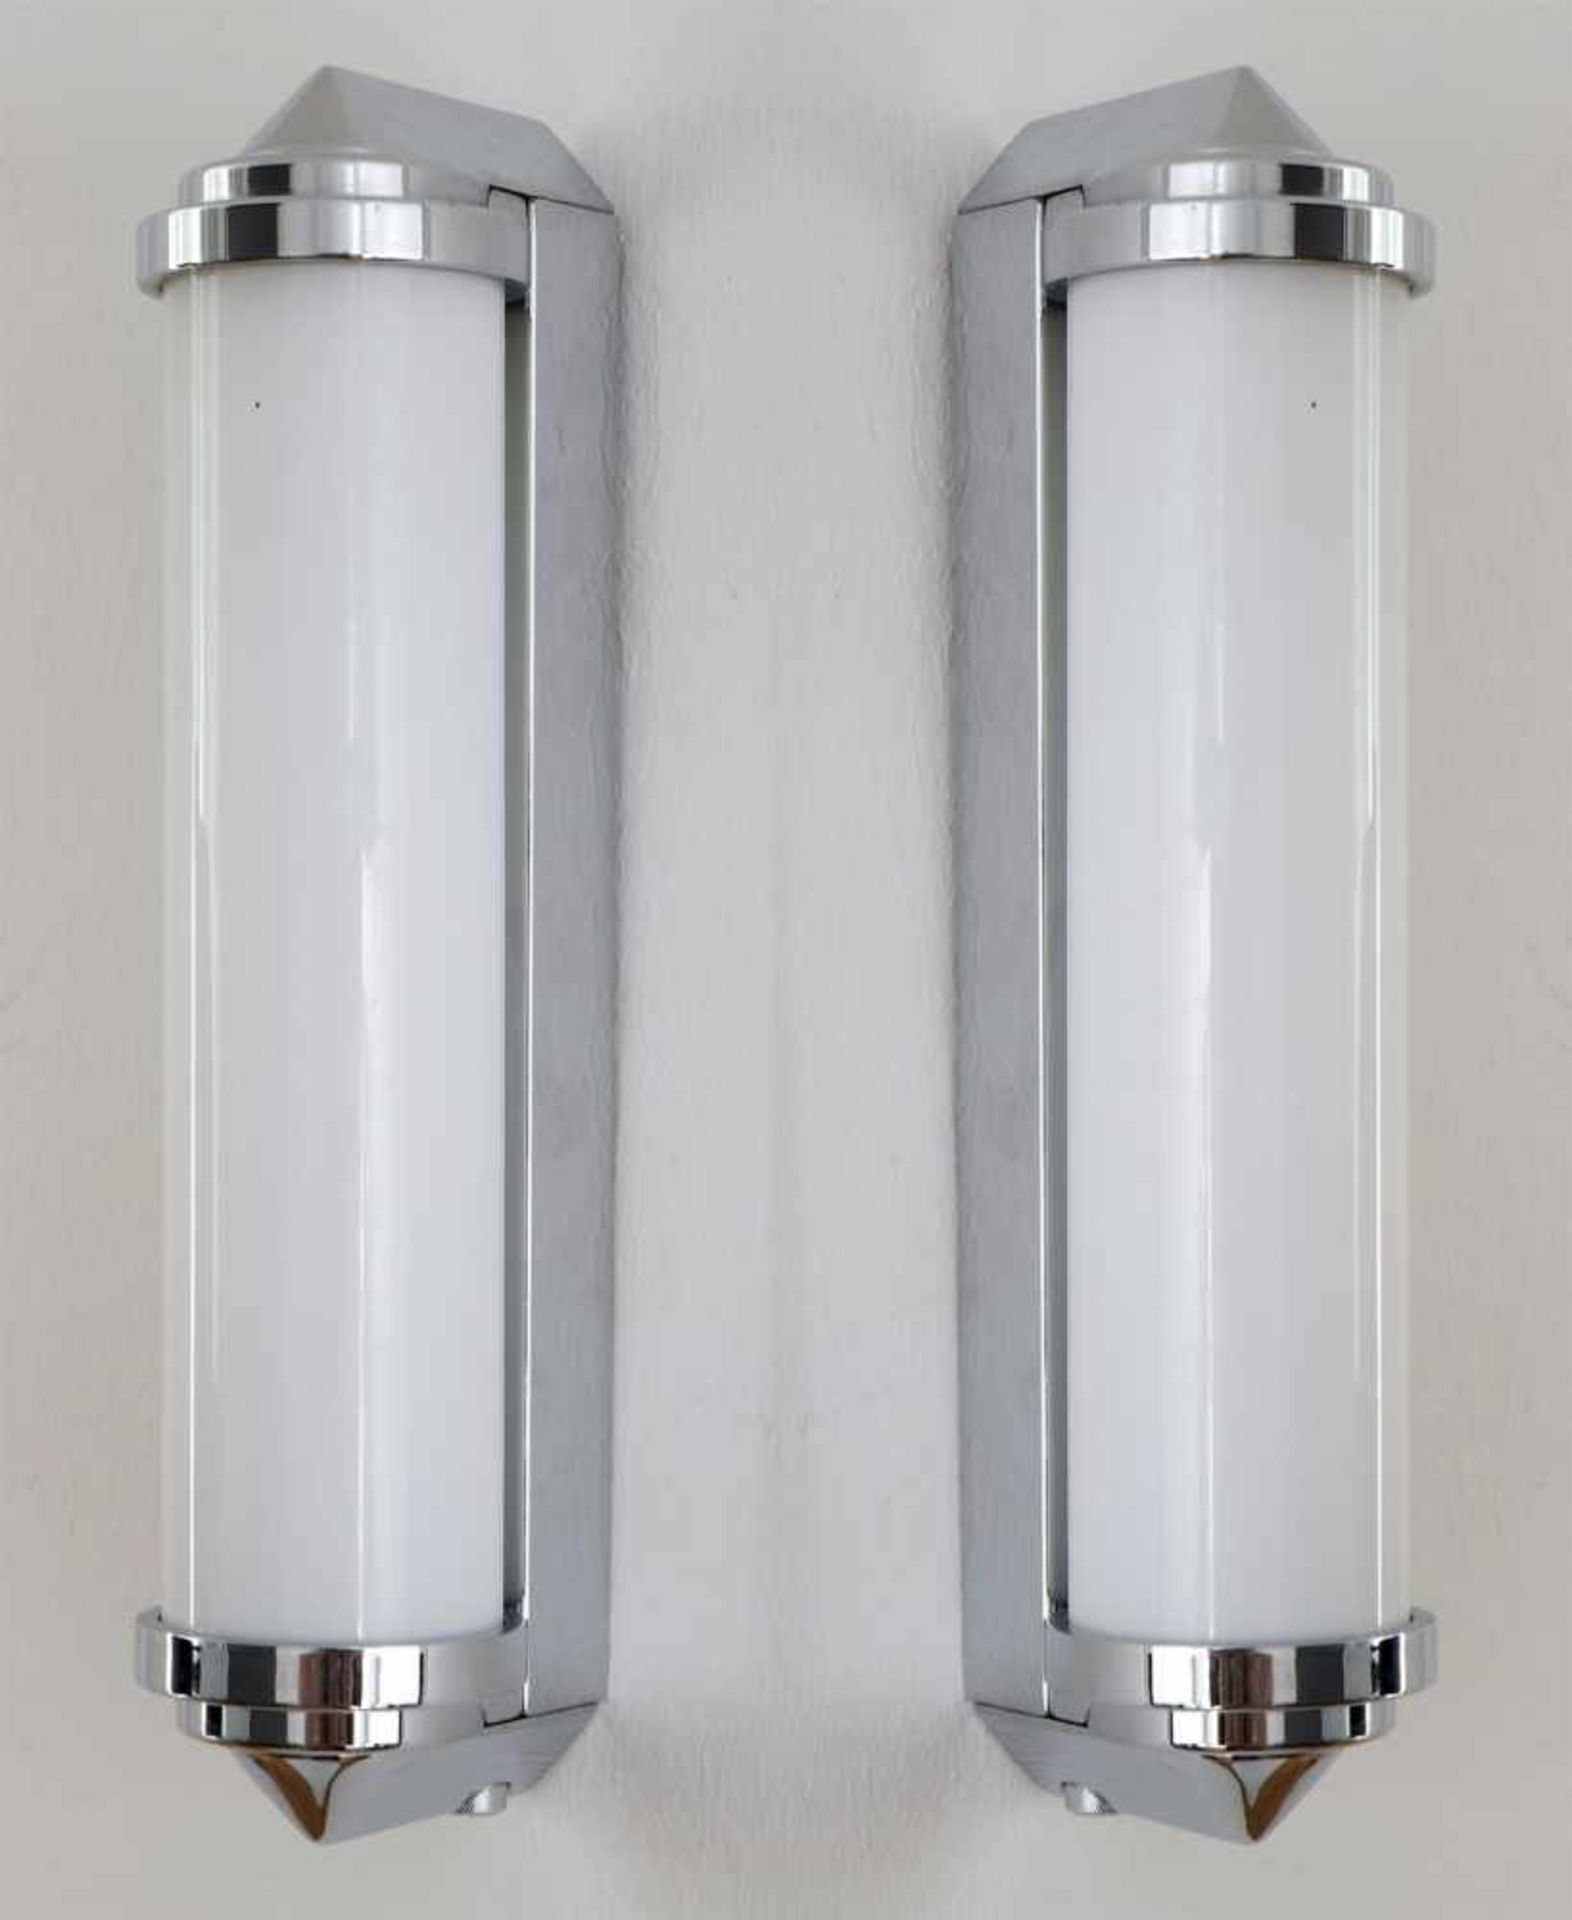 Paar Wandlampen im Stile des Art Decoverchromtes Metall und Milchglas, Glaszylinder an